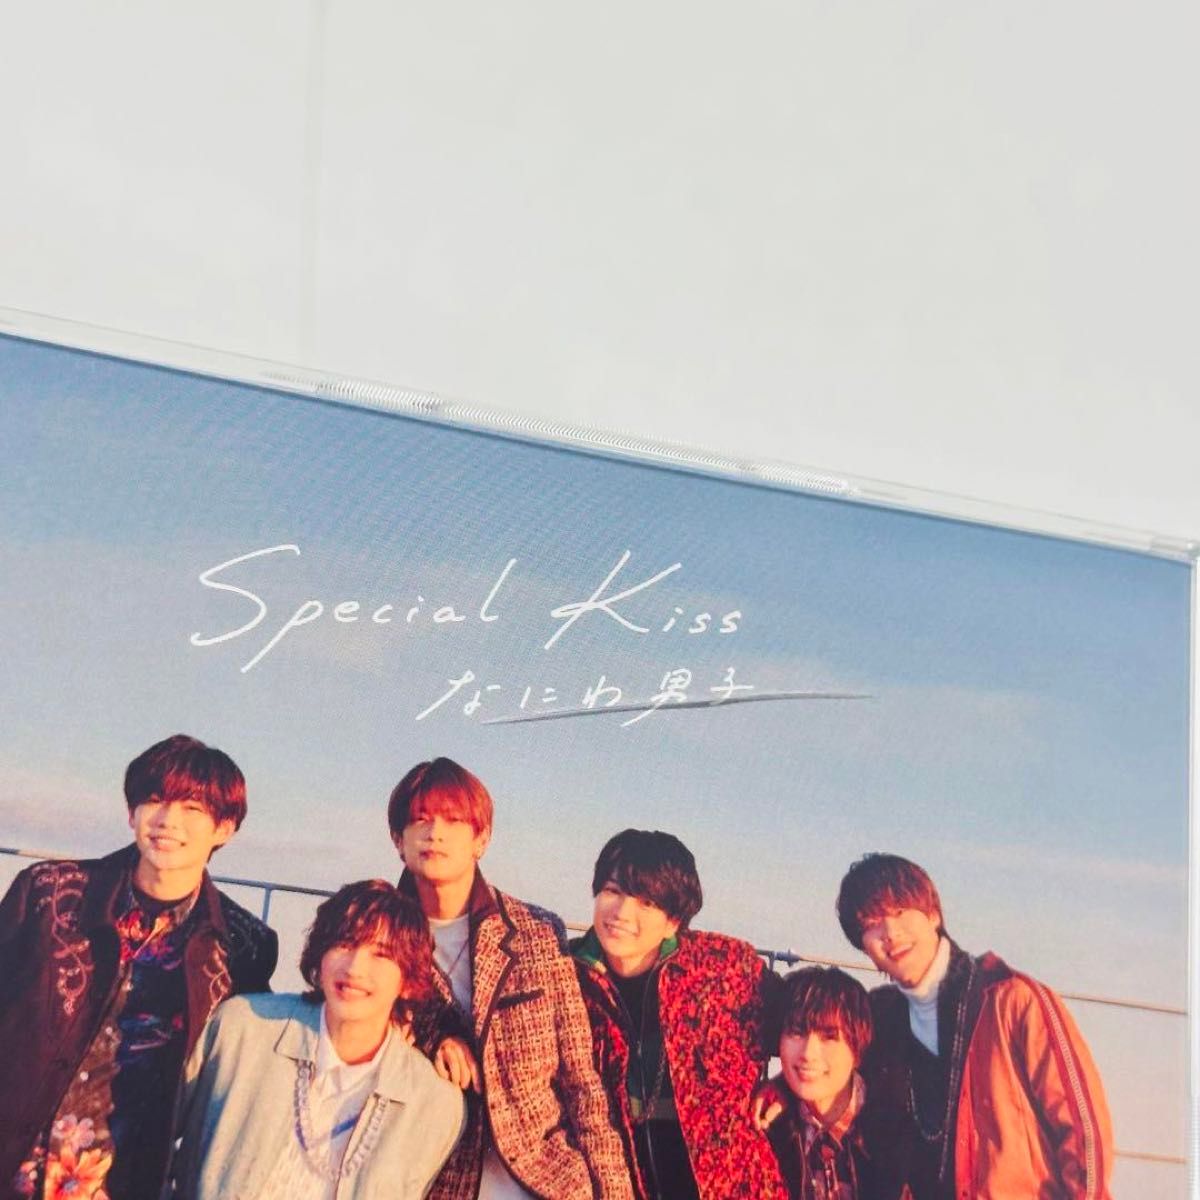 なにわ男子 Special Kiss CD DVD 初回盤 通常盤 特典付き 3形態 まとめ売り